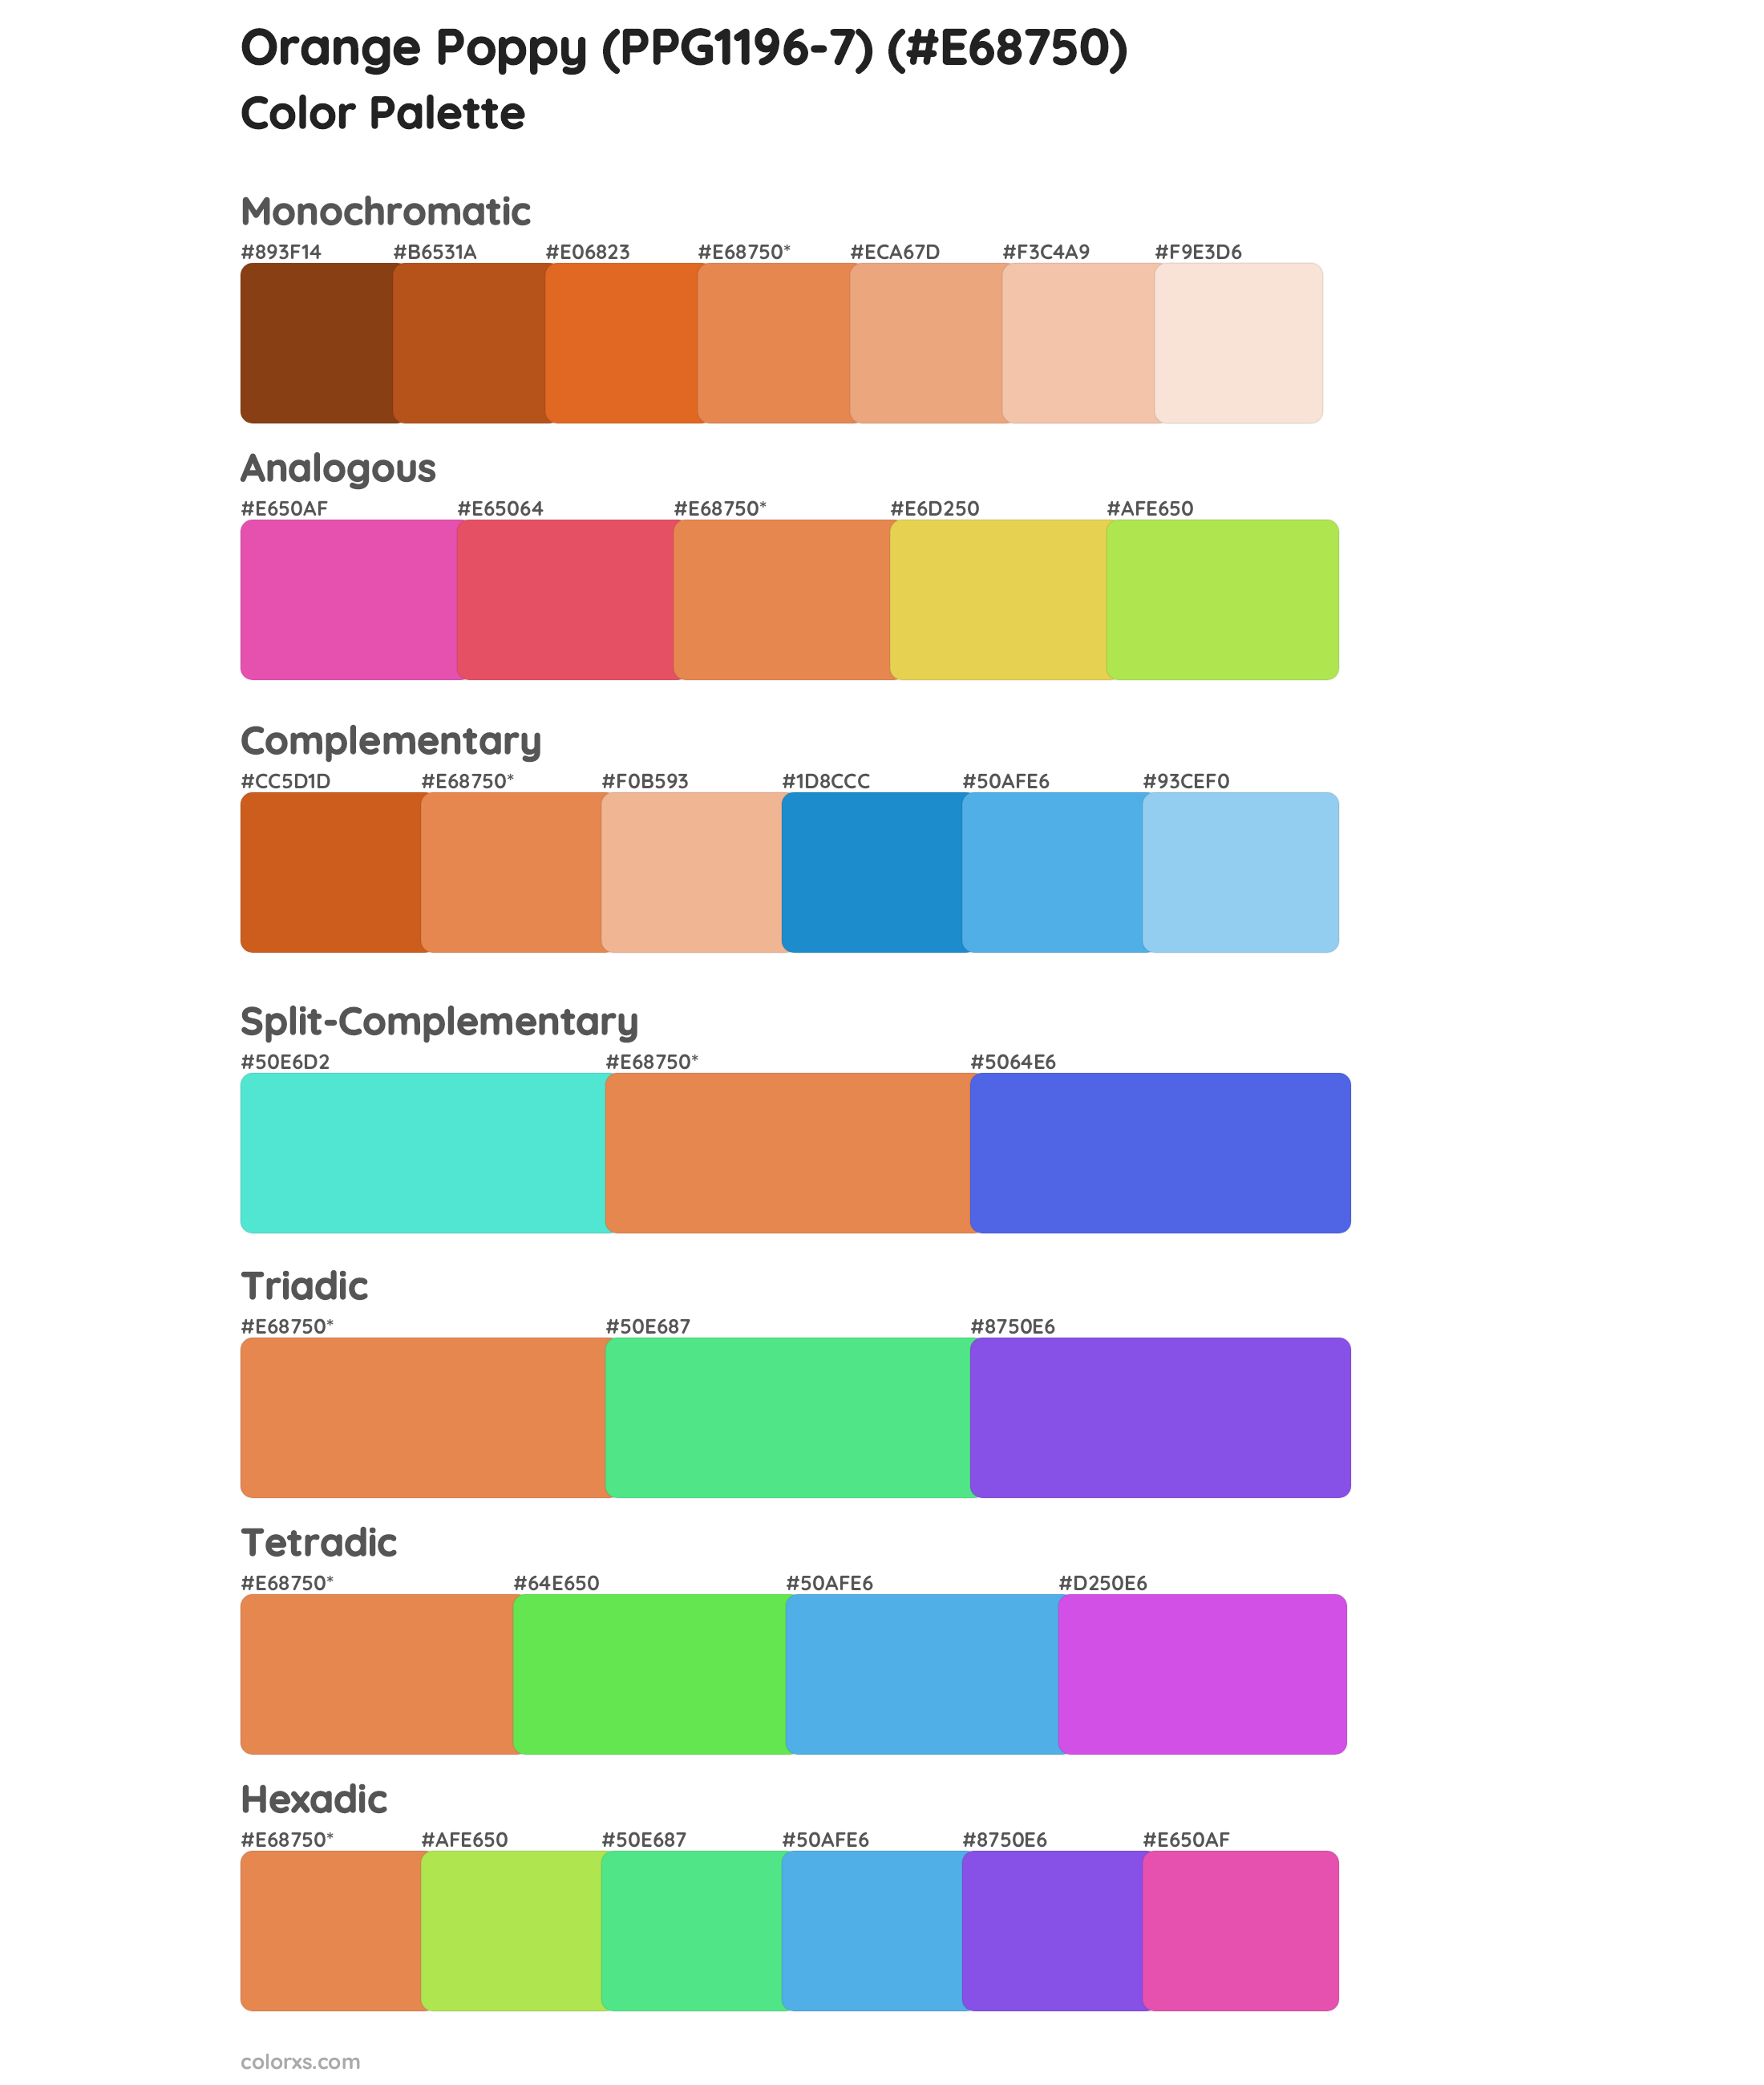 Orange Poppy (PPG1196-7) Color Scheme Palettes